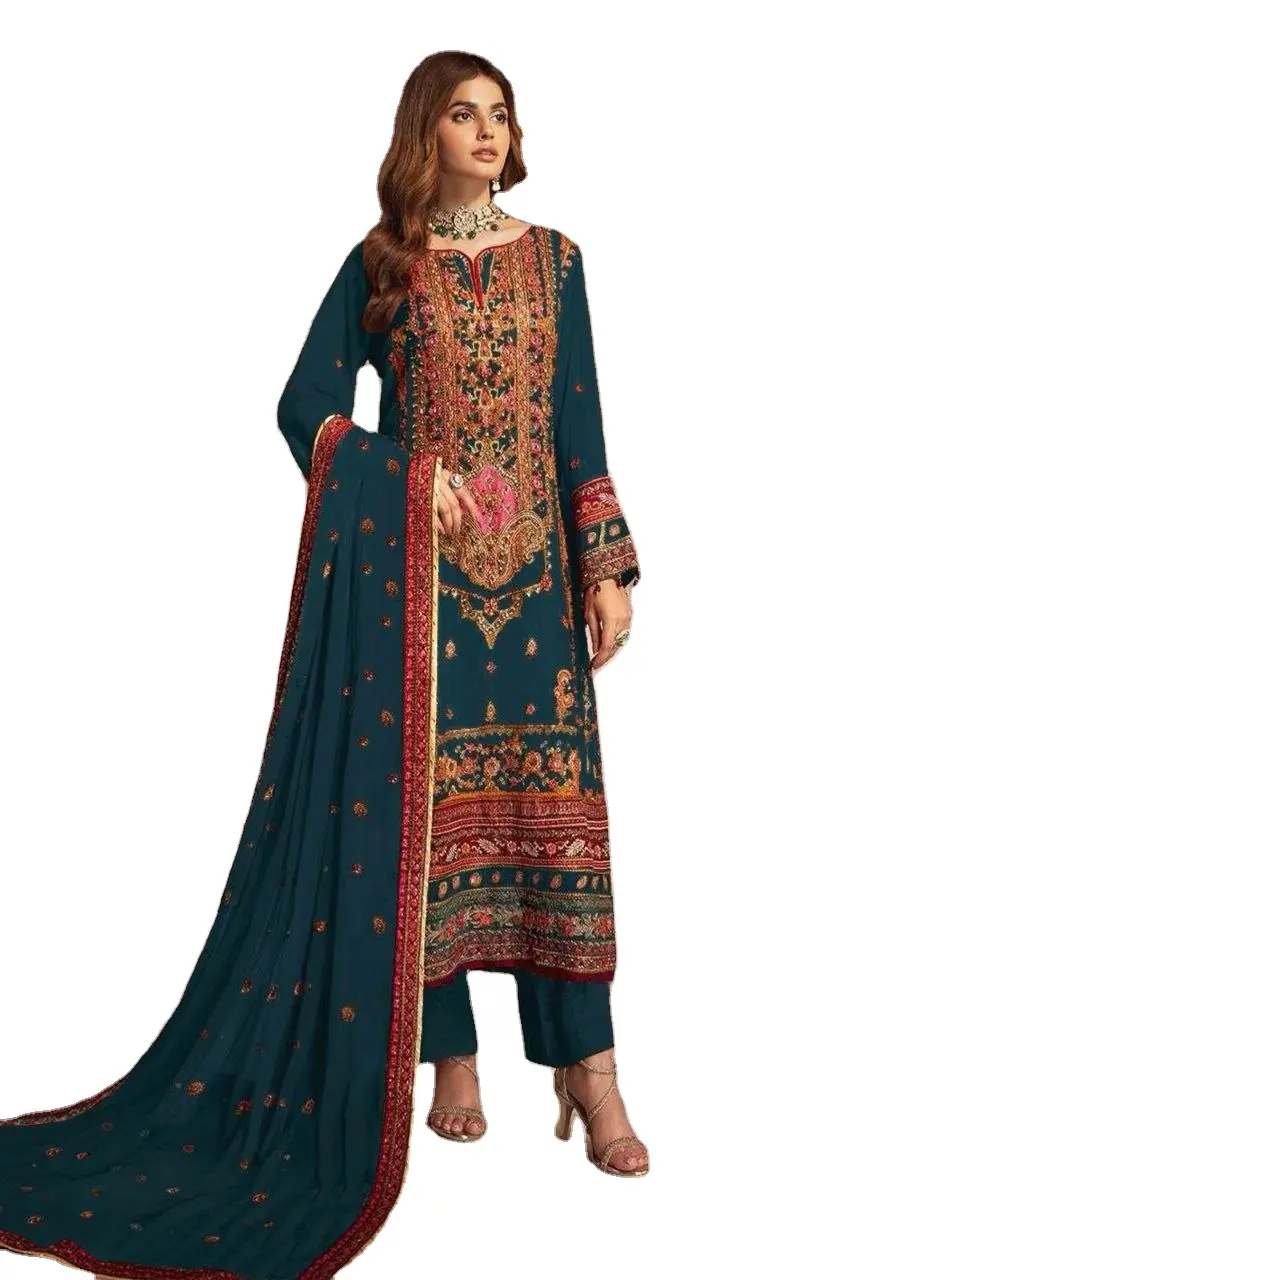 Gaun pesta kerja urutan bordir gaya Pakistan desainer India bergaya terbaru gaun Kurti